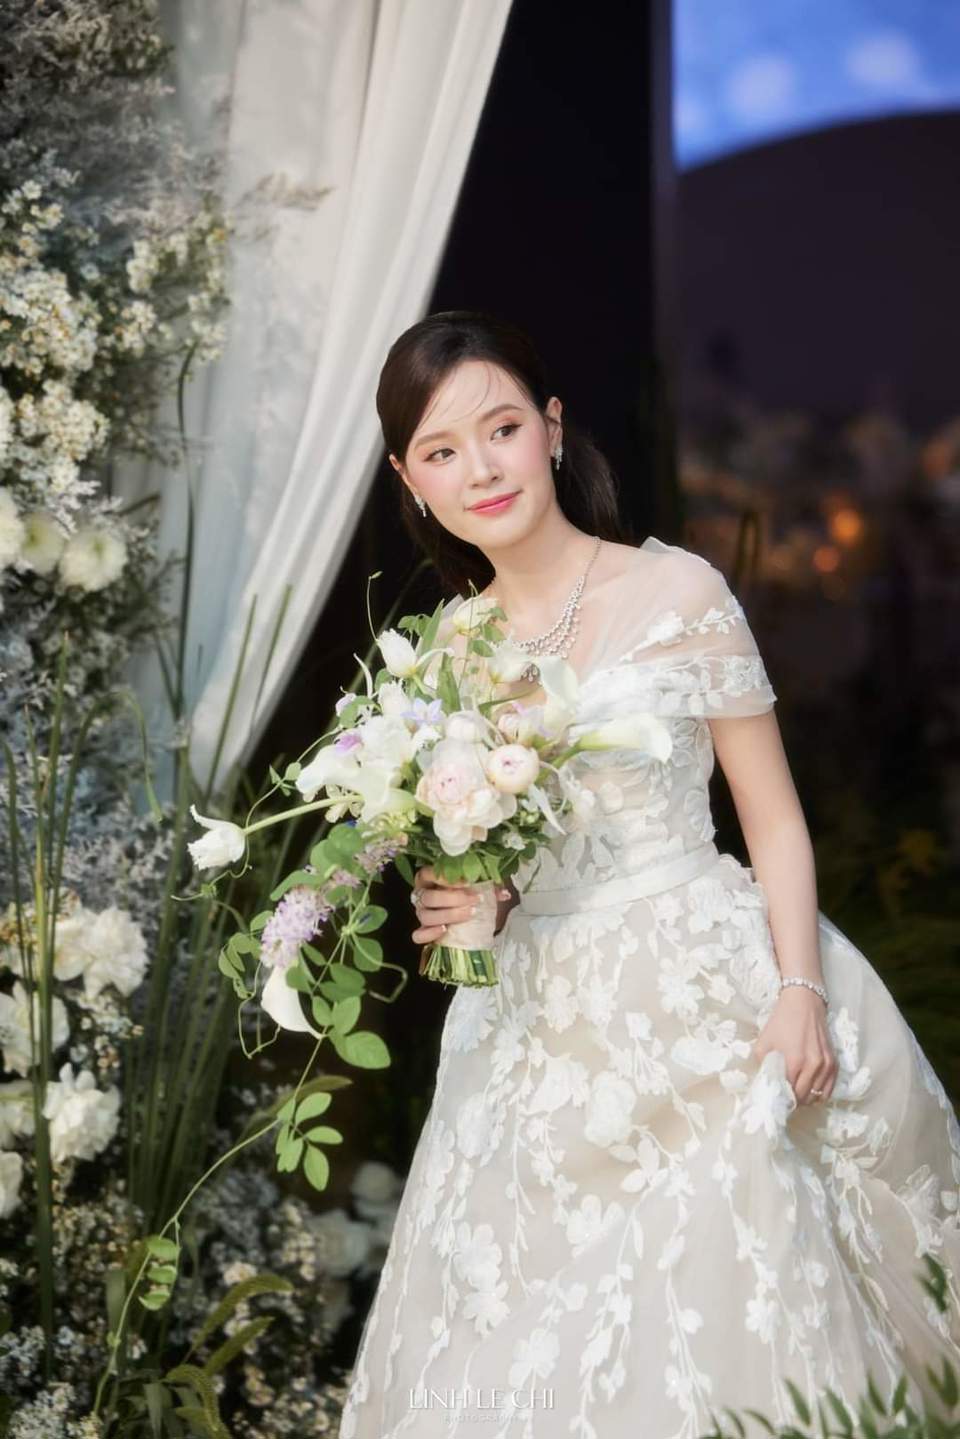 Dàn sao Việt dự đám cưới của Midu và thiếu gia kém tuổi - Ảnh 11